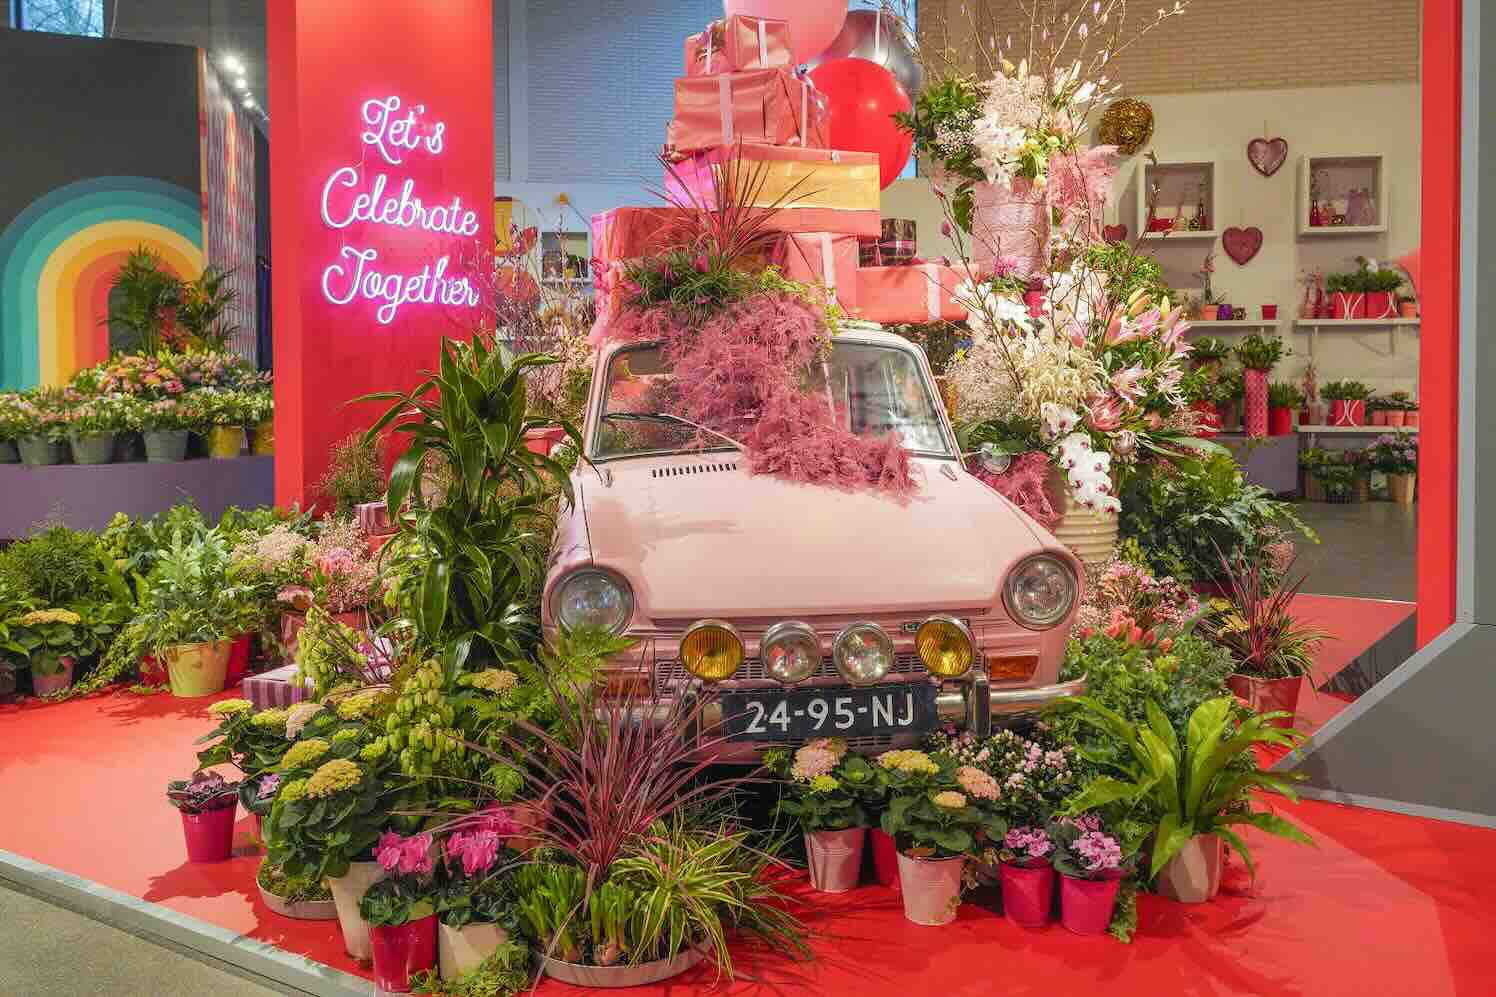 antsatische bloemenshows in jubilerende Keukenhof hebben verrassend decor en afwisselende kalender